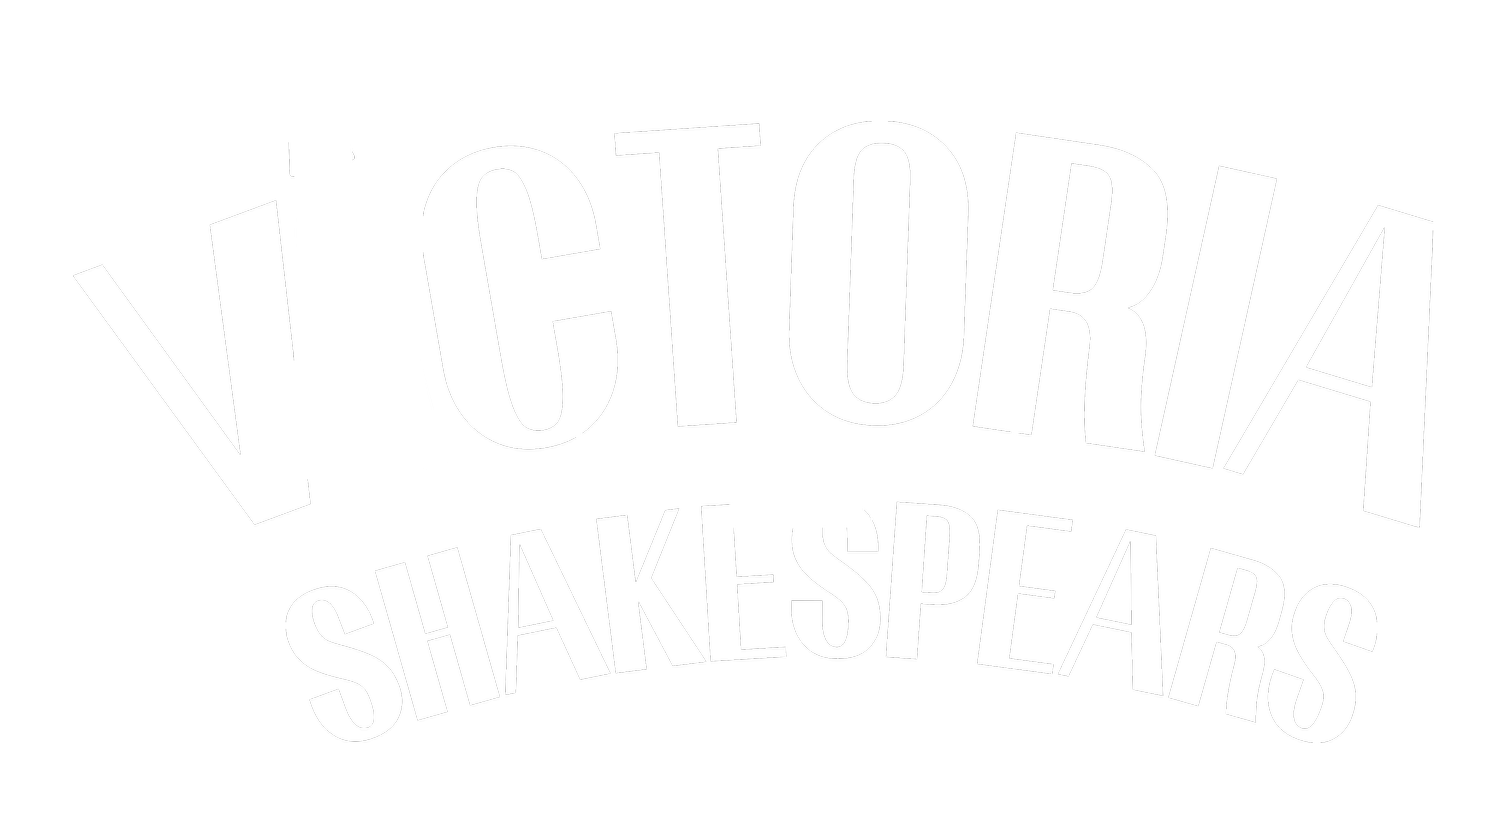 Victoria Shakespears 